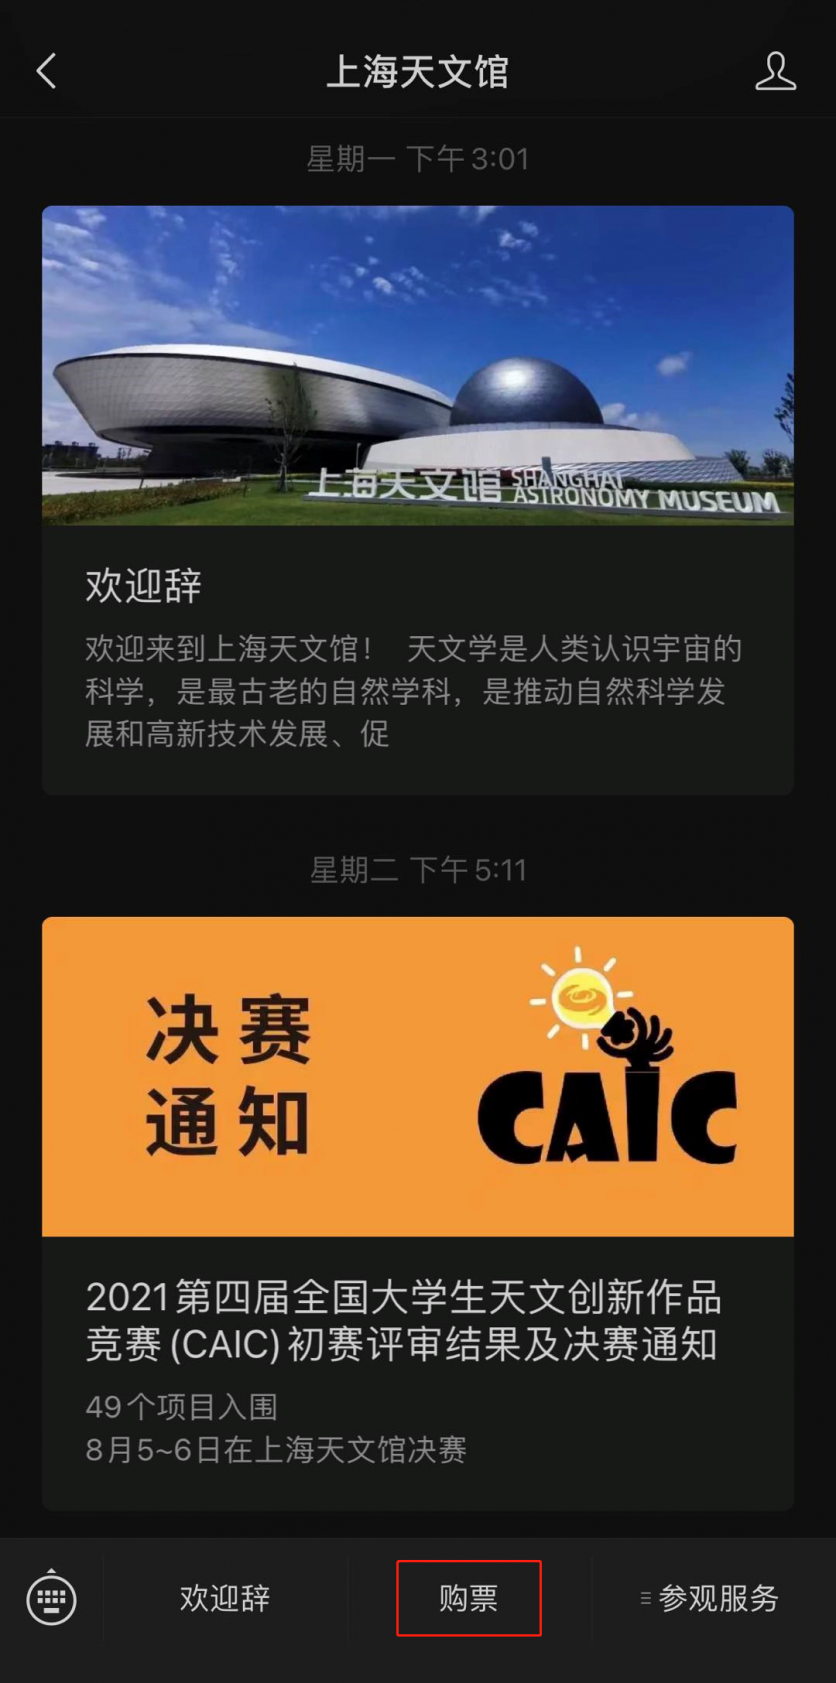 上海天文馆门票预约 上海天文馆几点放票